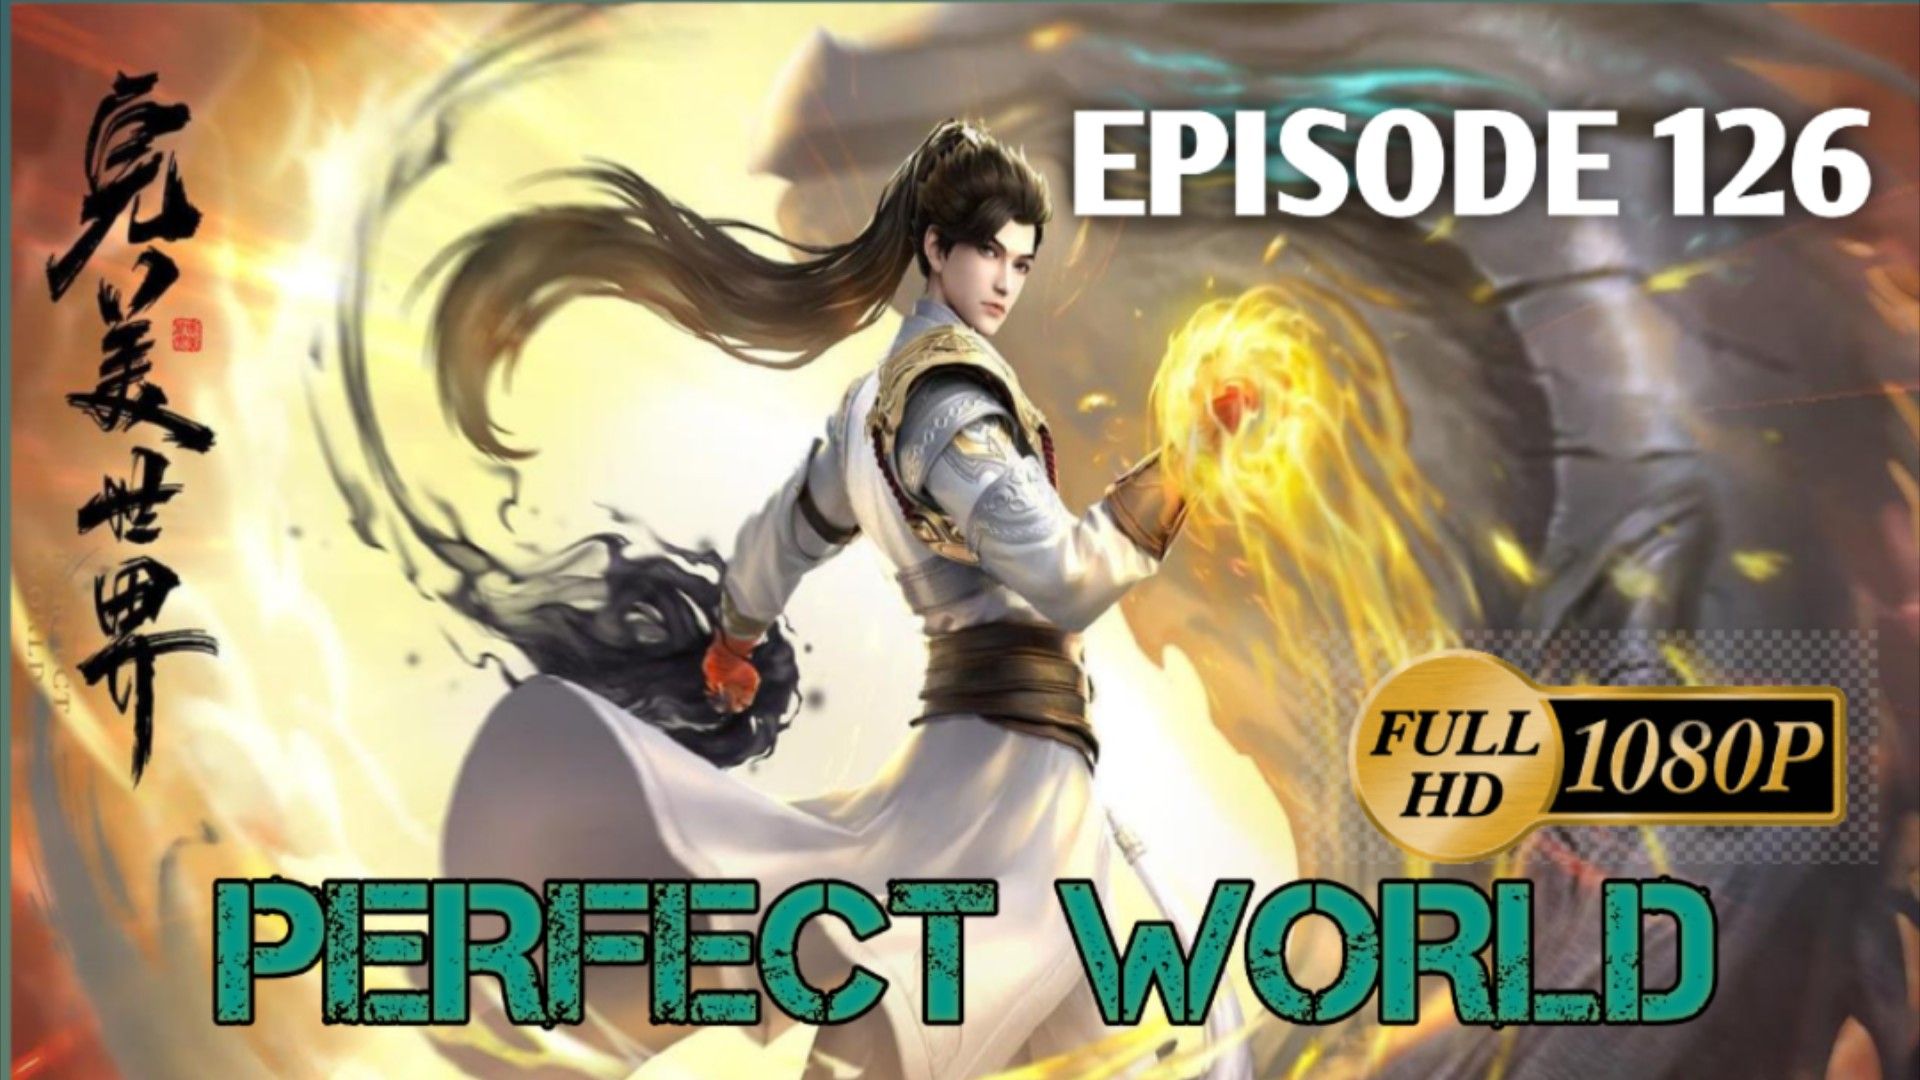 Perfect World Episode 50, Wanmei Shijie